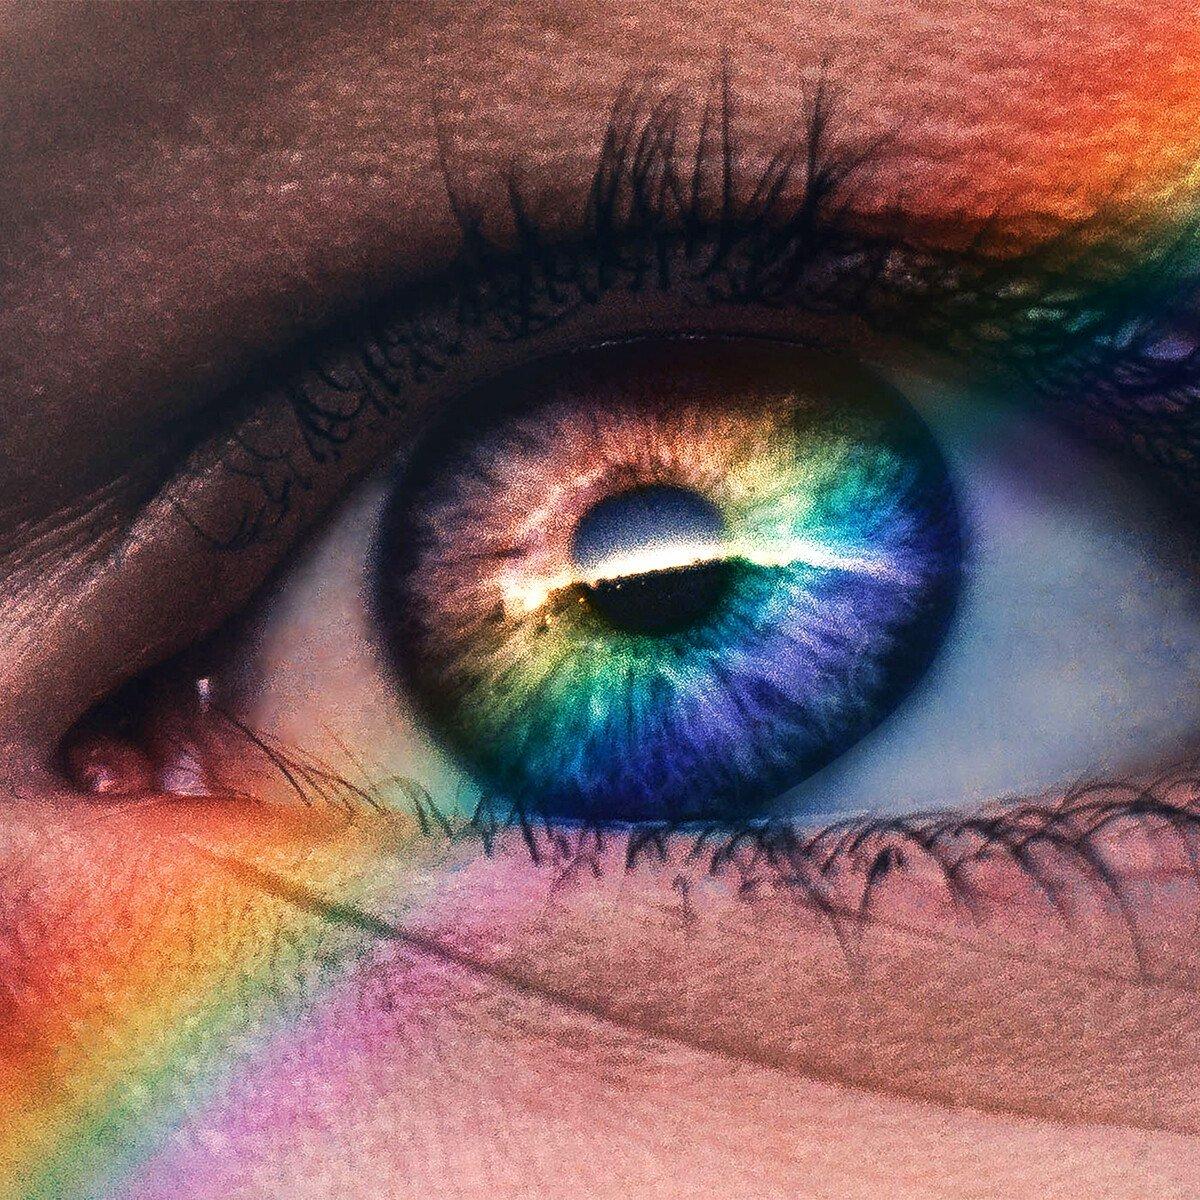 Rainbow reflected across eye